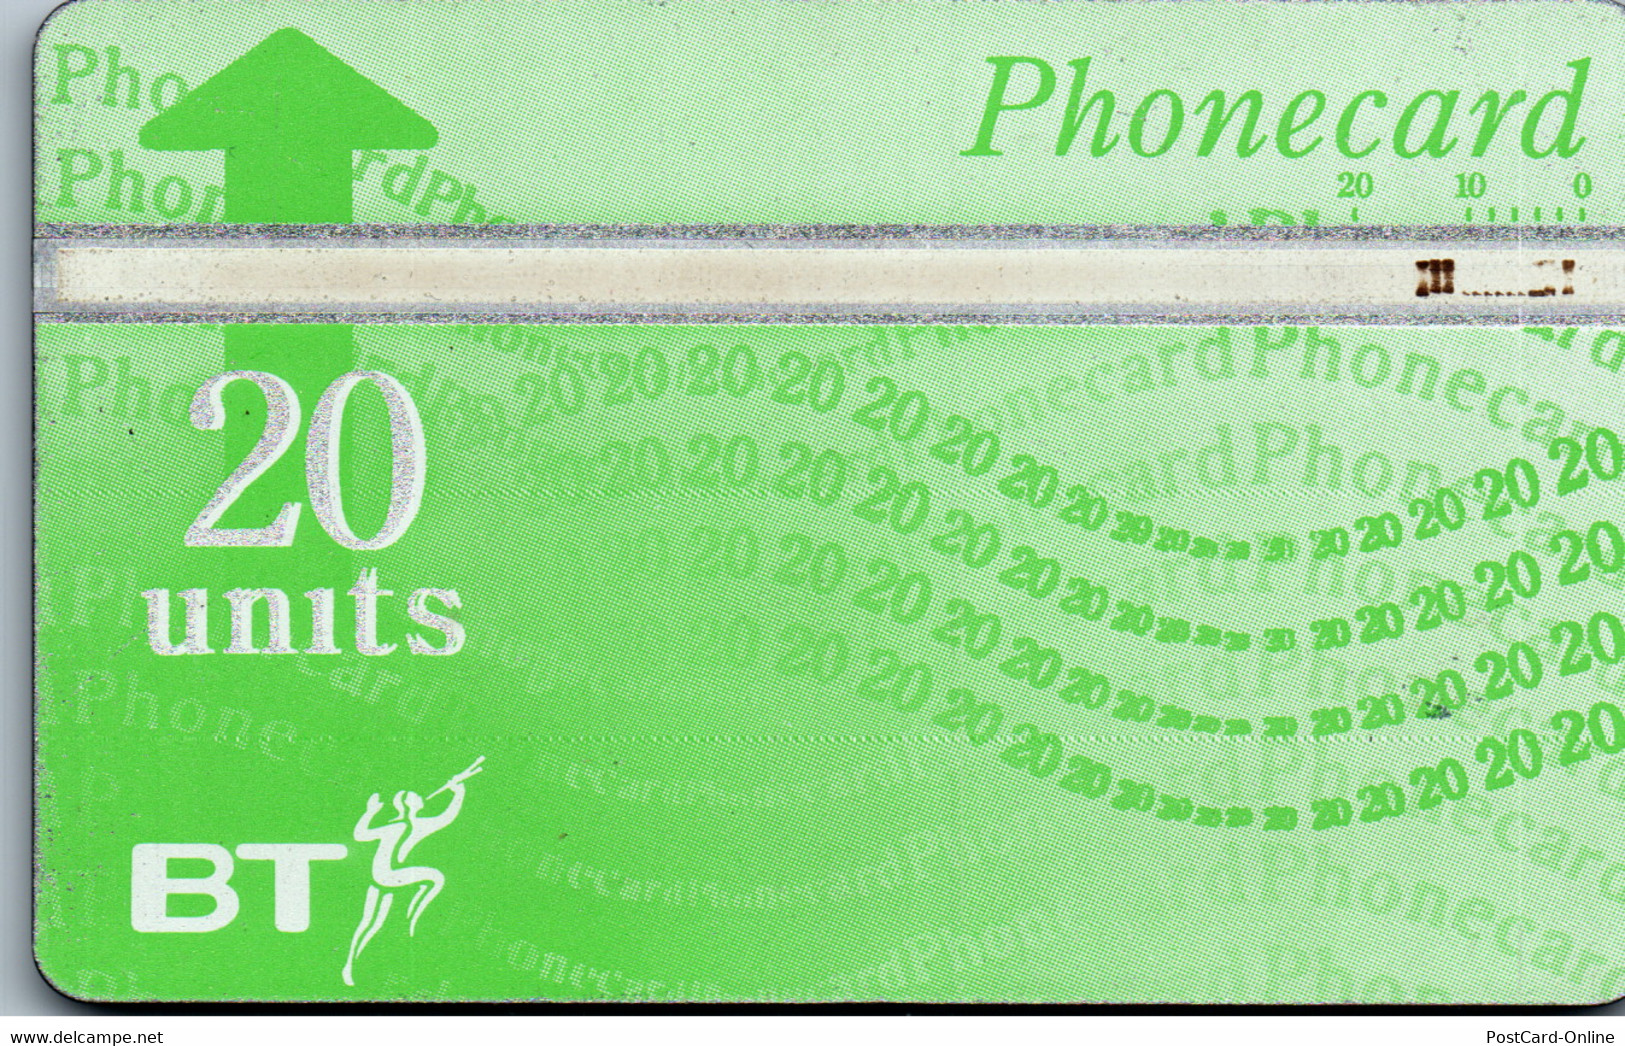 27966 - Großbritannien - BT , Phonecard - BT Edición General